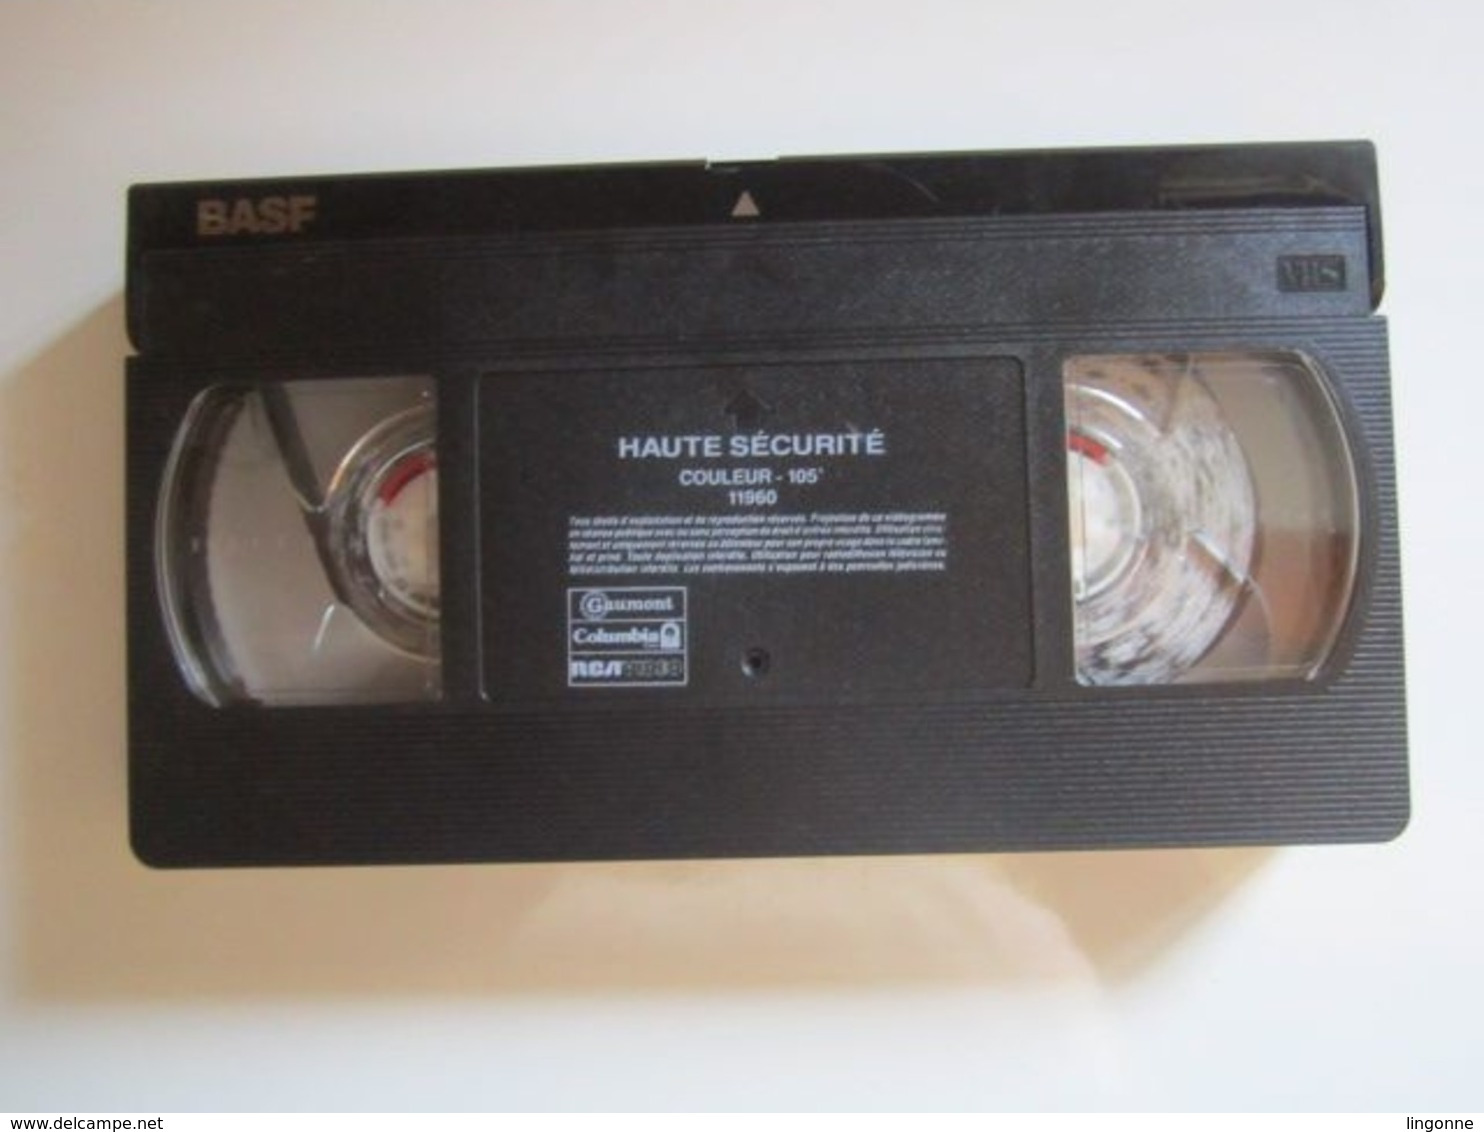 CASSETTE VIDEO VHS Sylvester Stallone Haute-sécurité - Action & Abenteuer